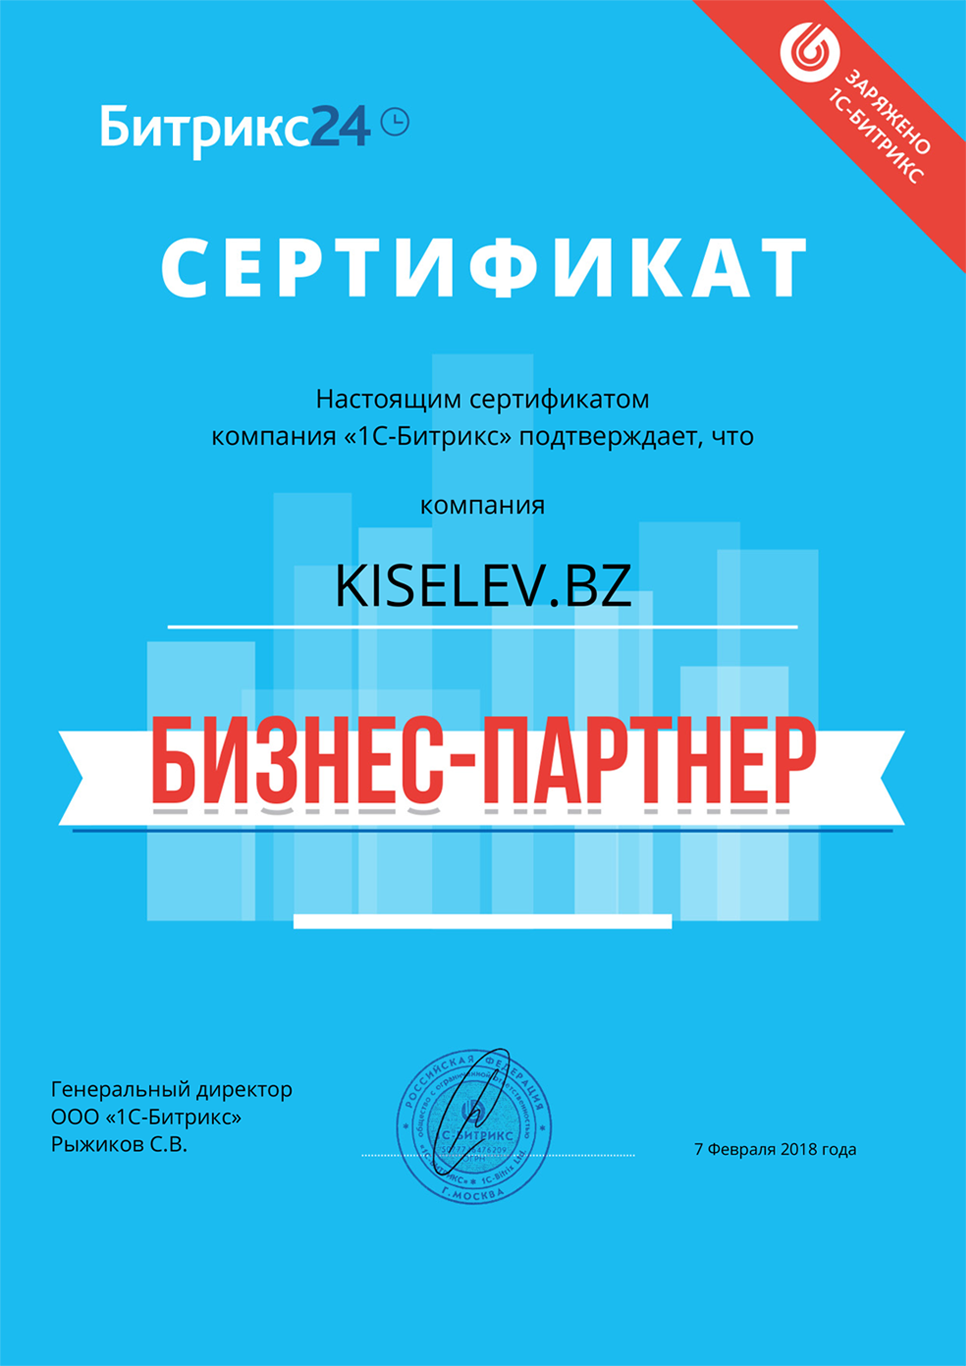 Сертификат партнёра по АМОСРМ в Колпашево